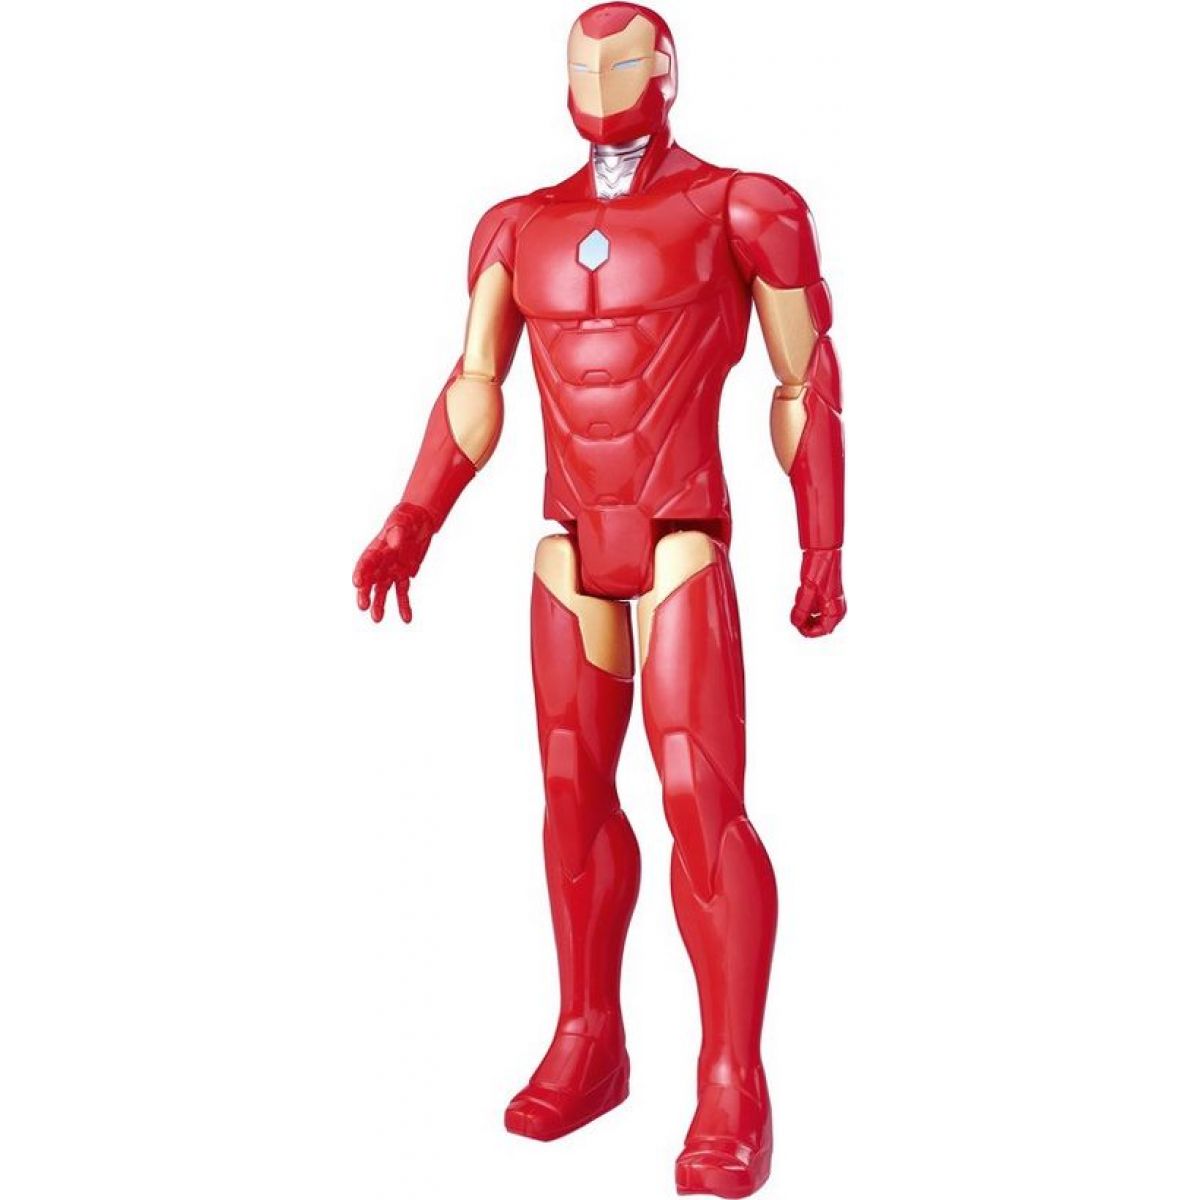 Hasbro Avengers Titan figurka - Iron Man